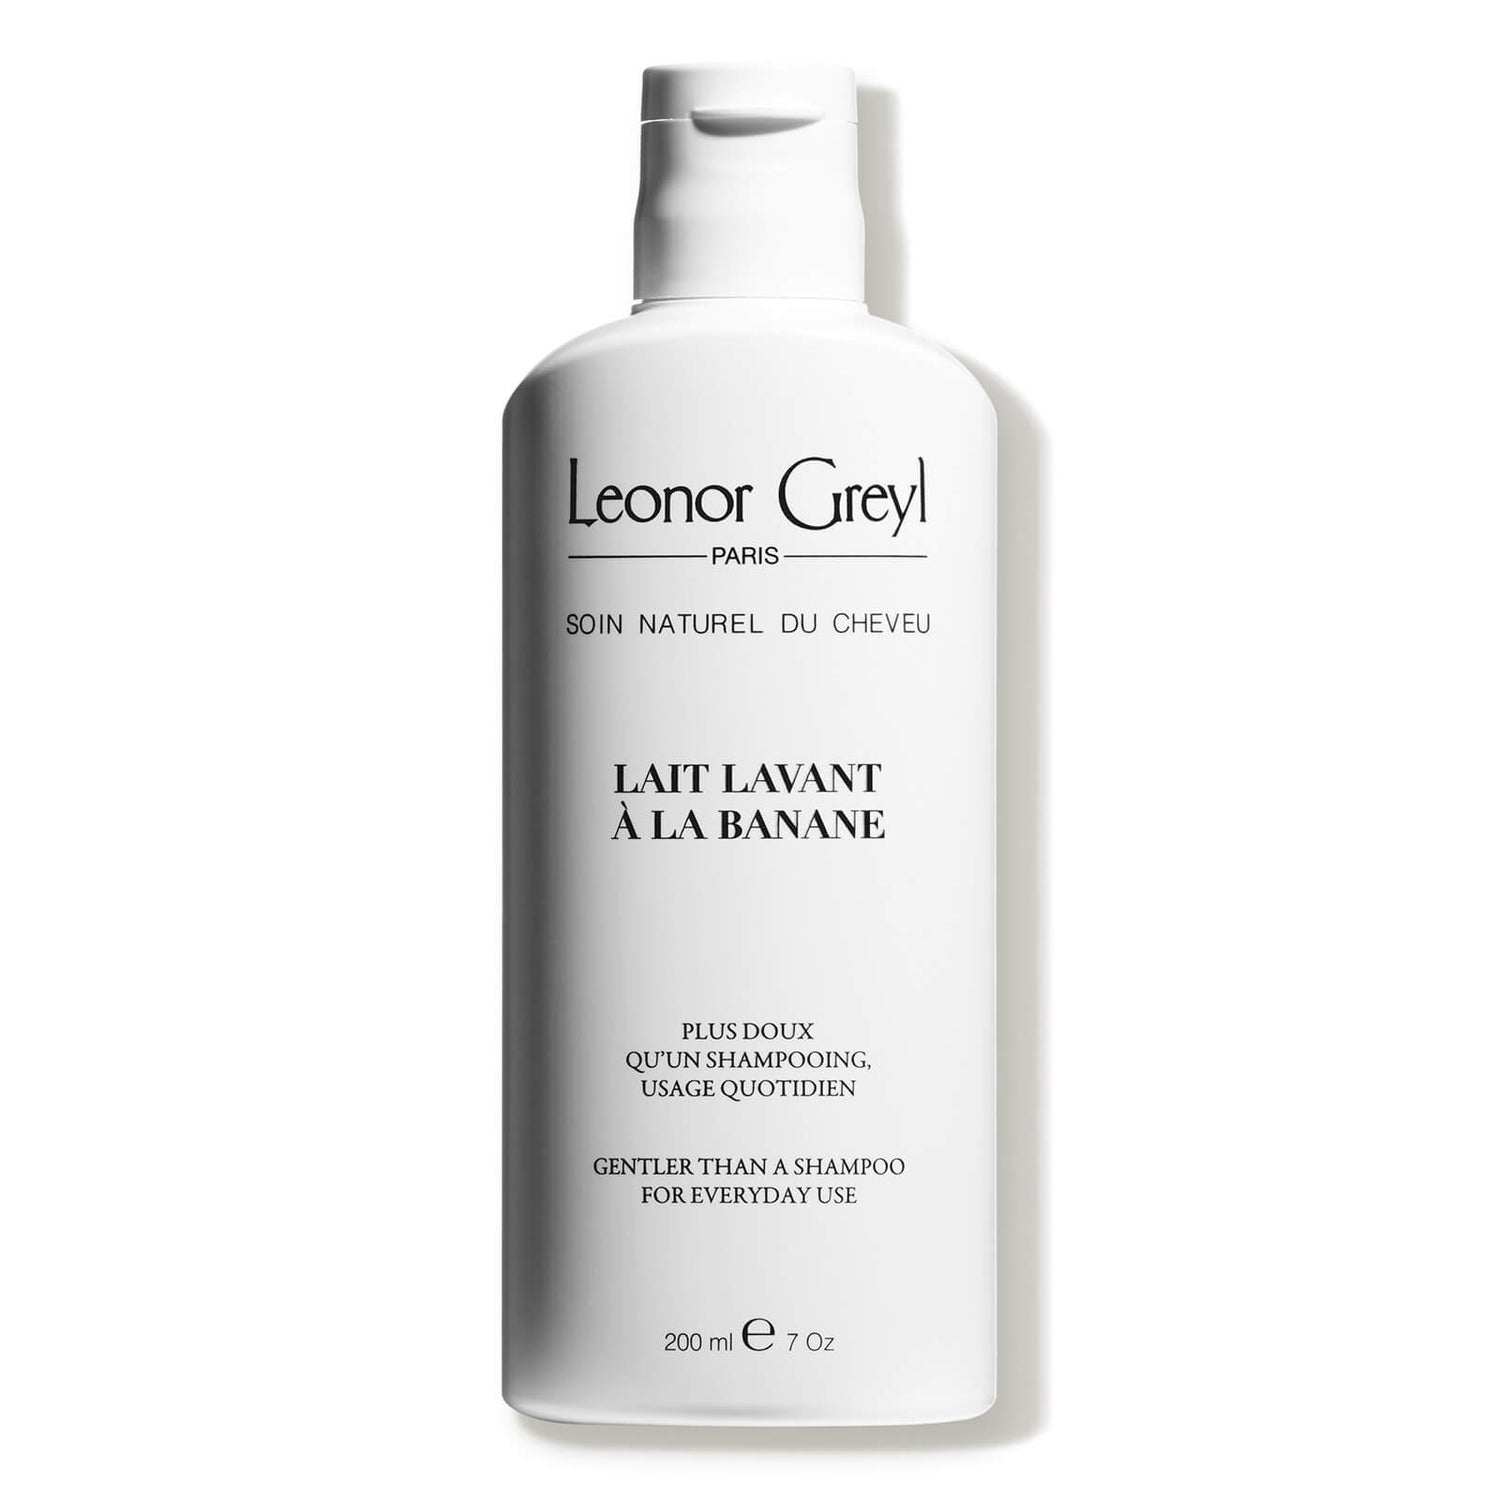 Leonor Greyl Lait Lavant à la Banane Shampoo 200ml